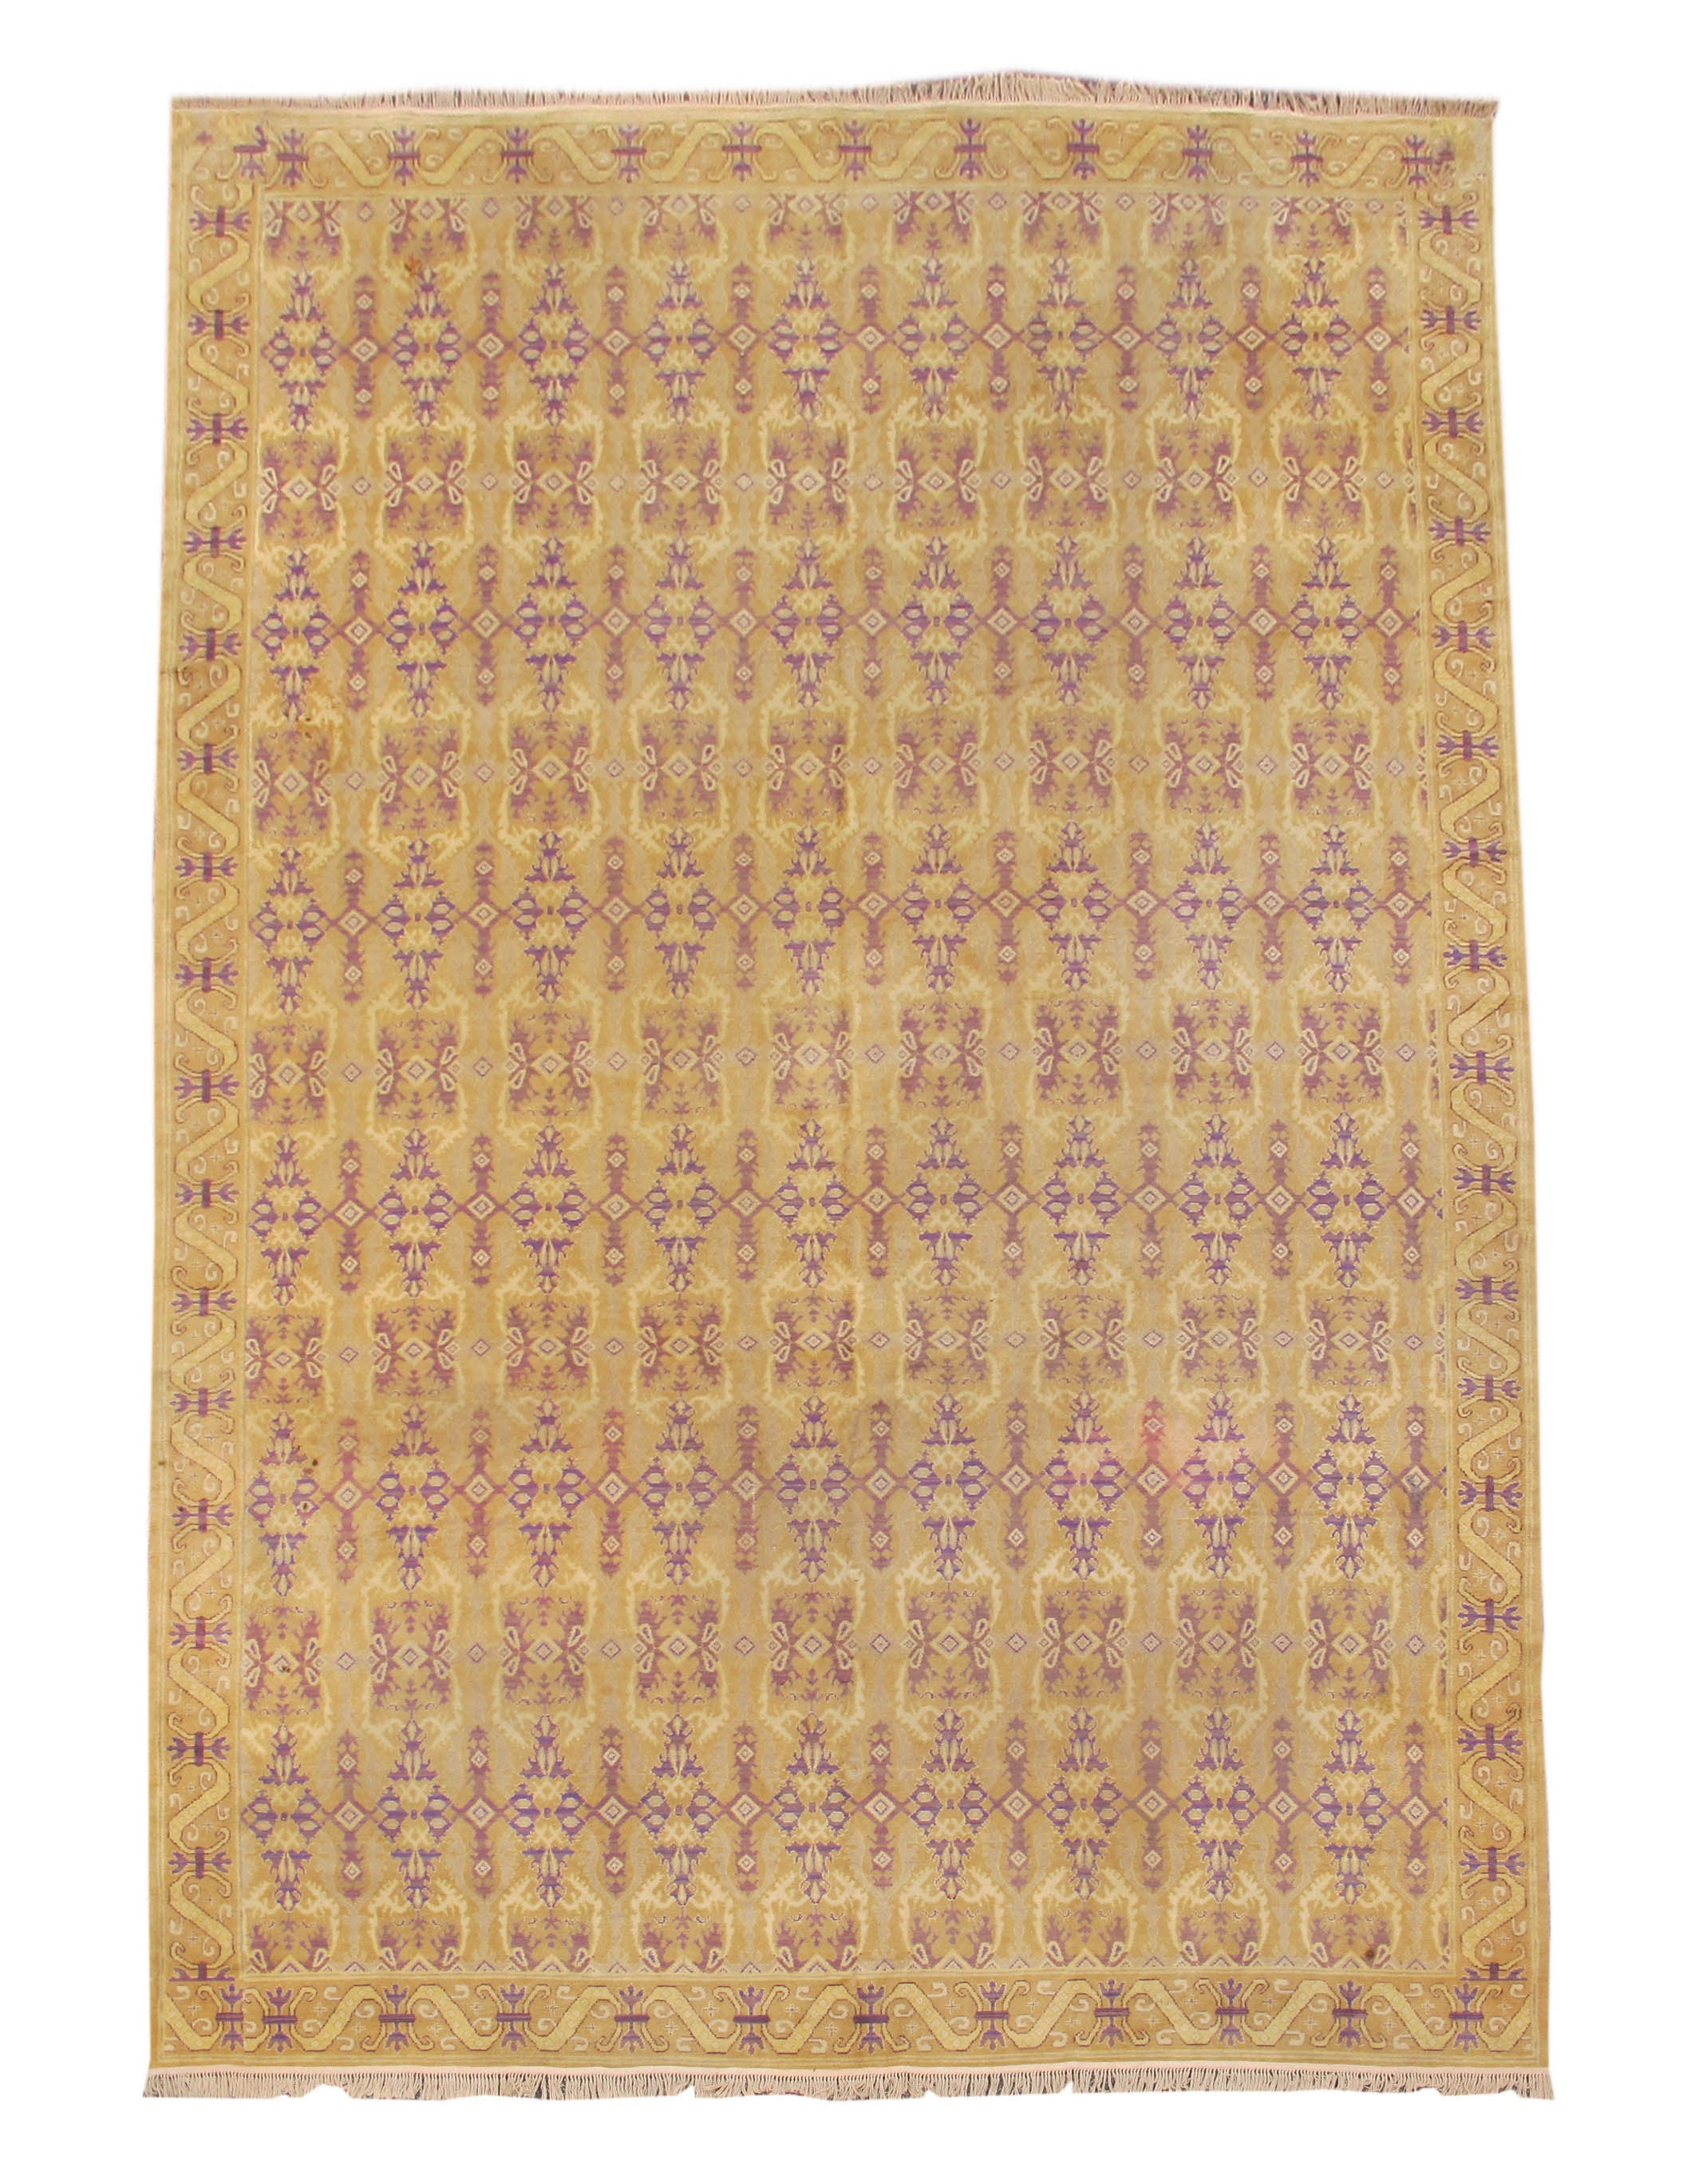 Tapis espagnol du début du XXe siècle de couleur dorée avec motifs de voiles